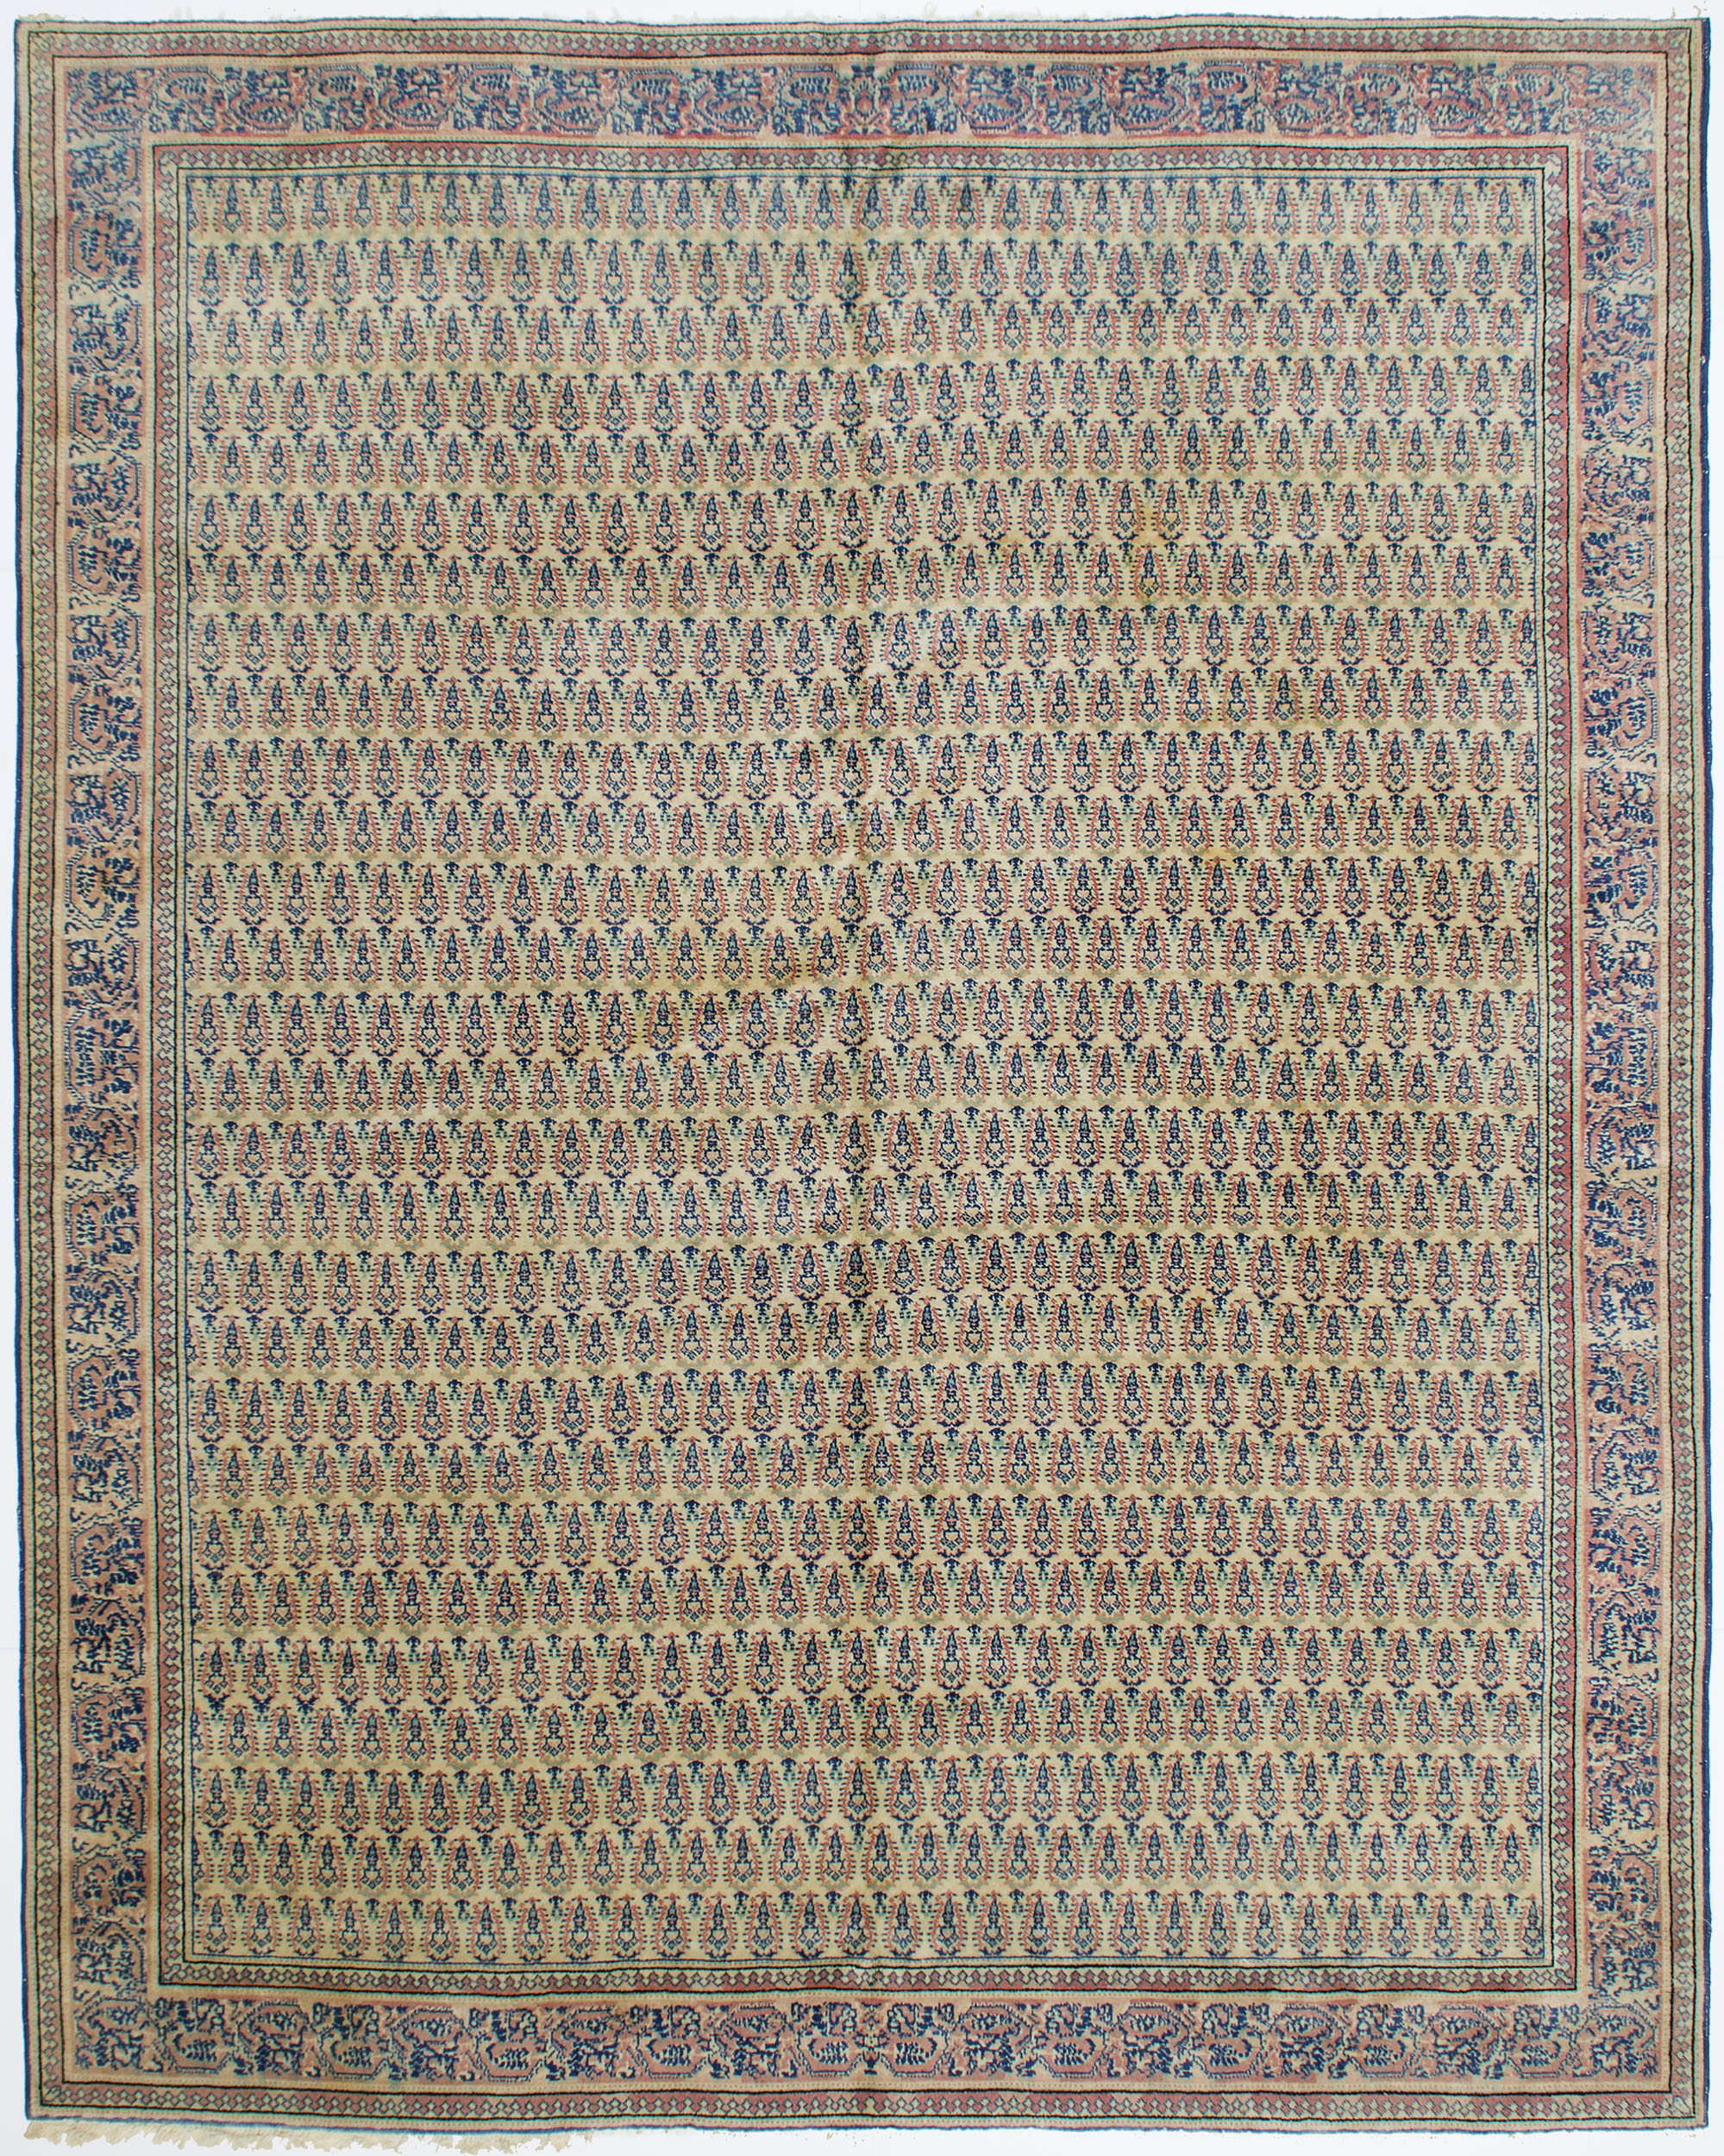 Amritsar Carpet 9' 9" x 7' 11" 